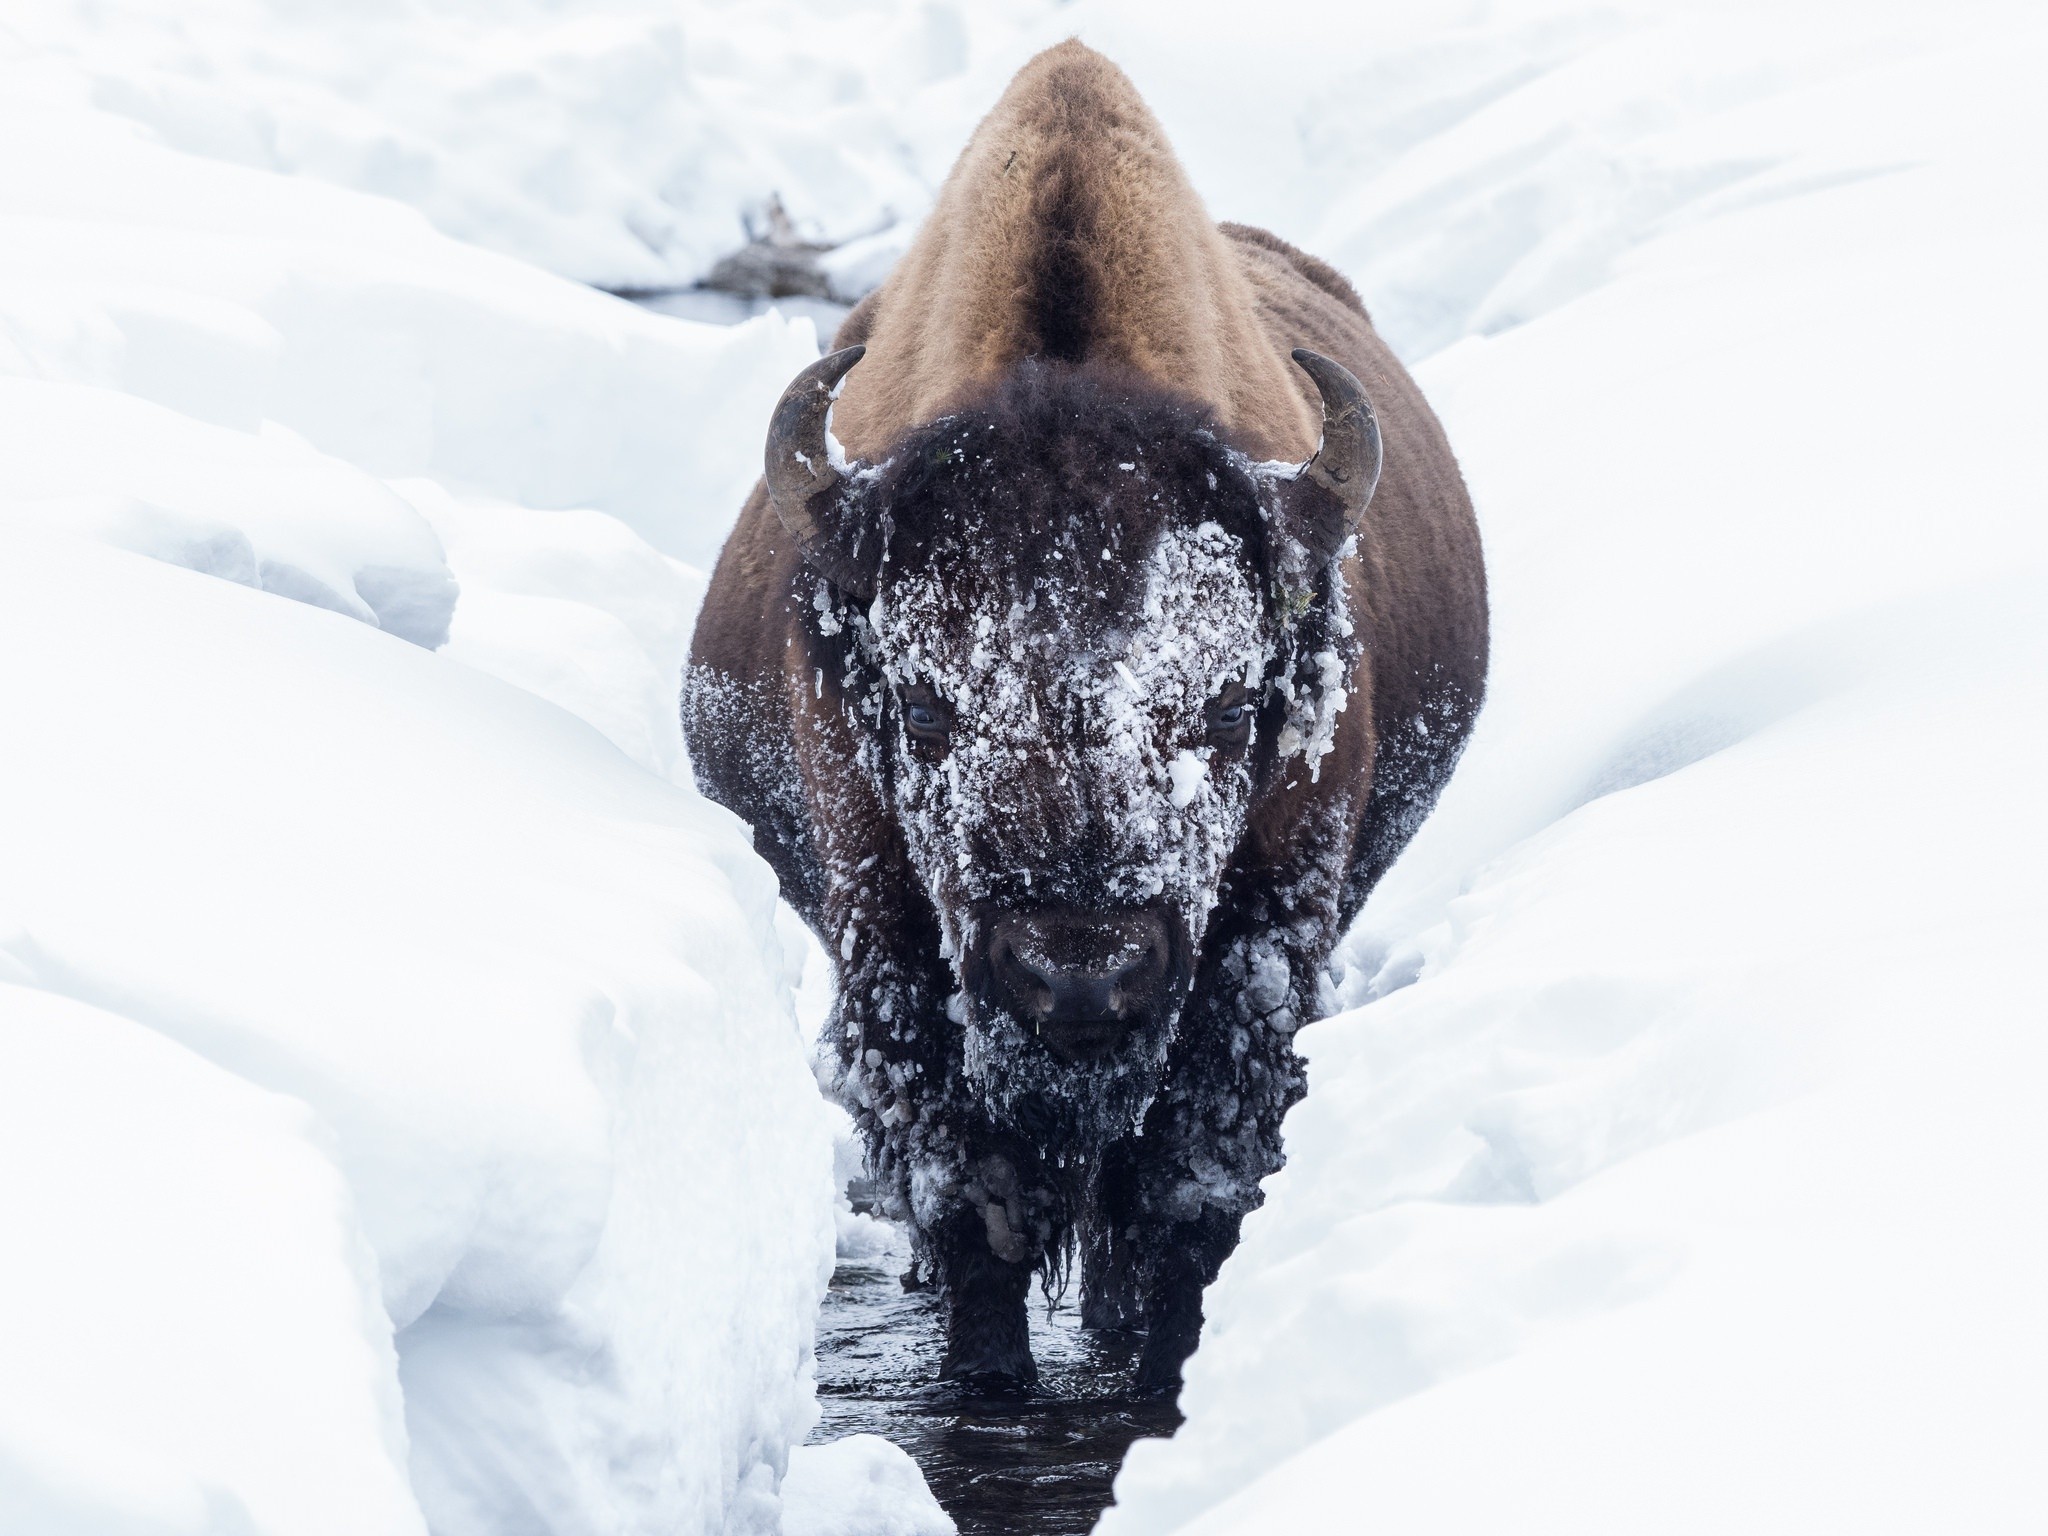 General 2048x1536 bison animals cold winter snow